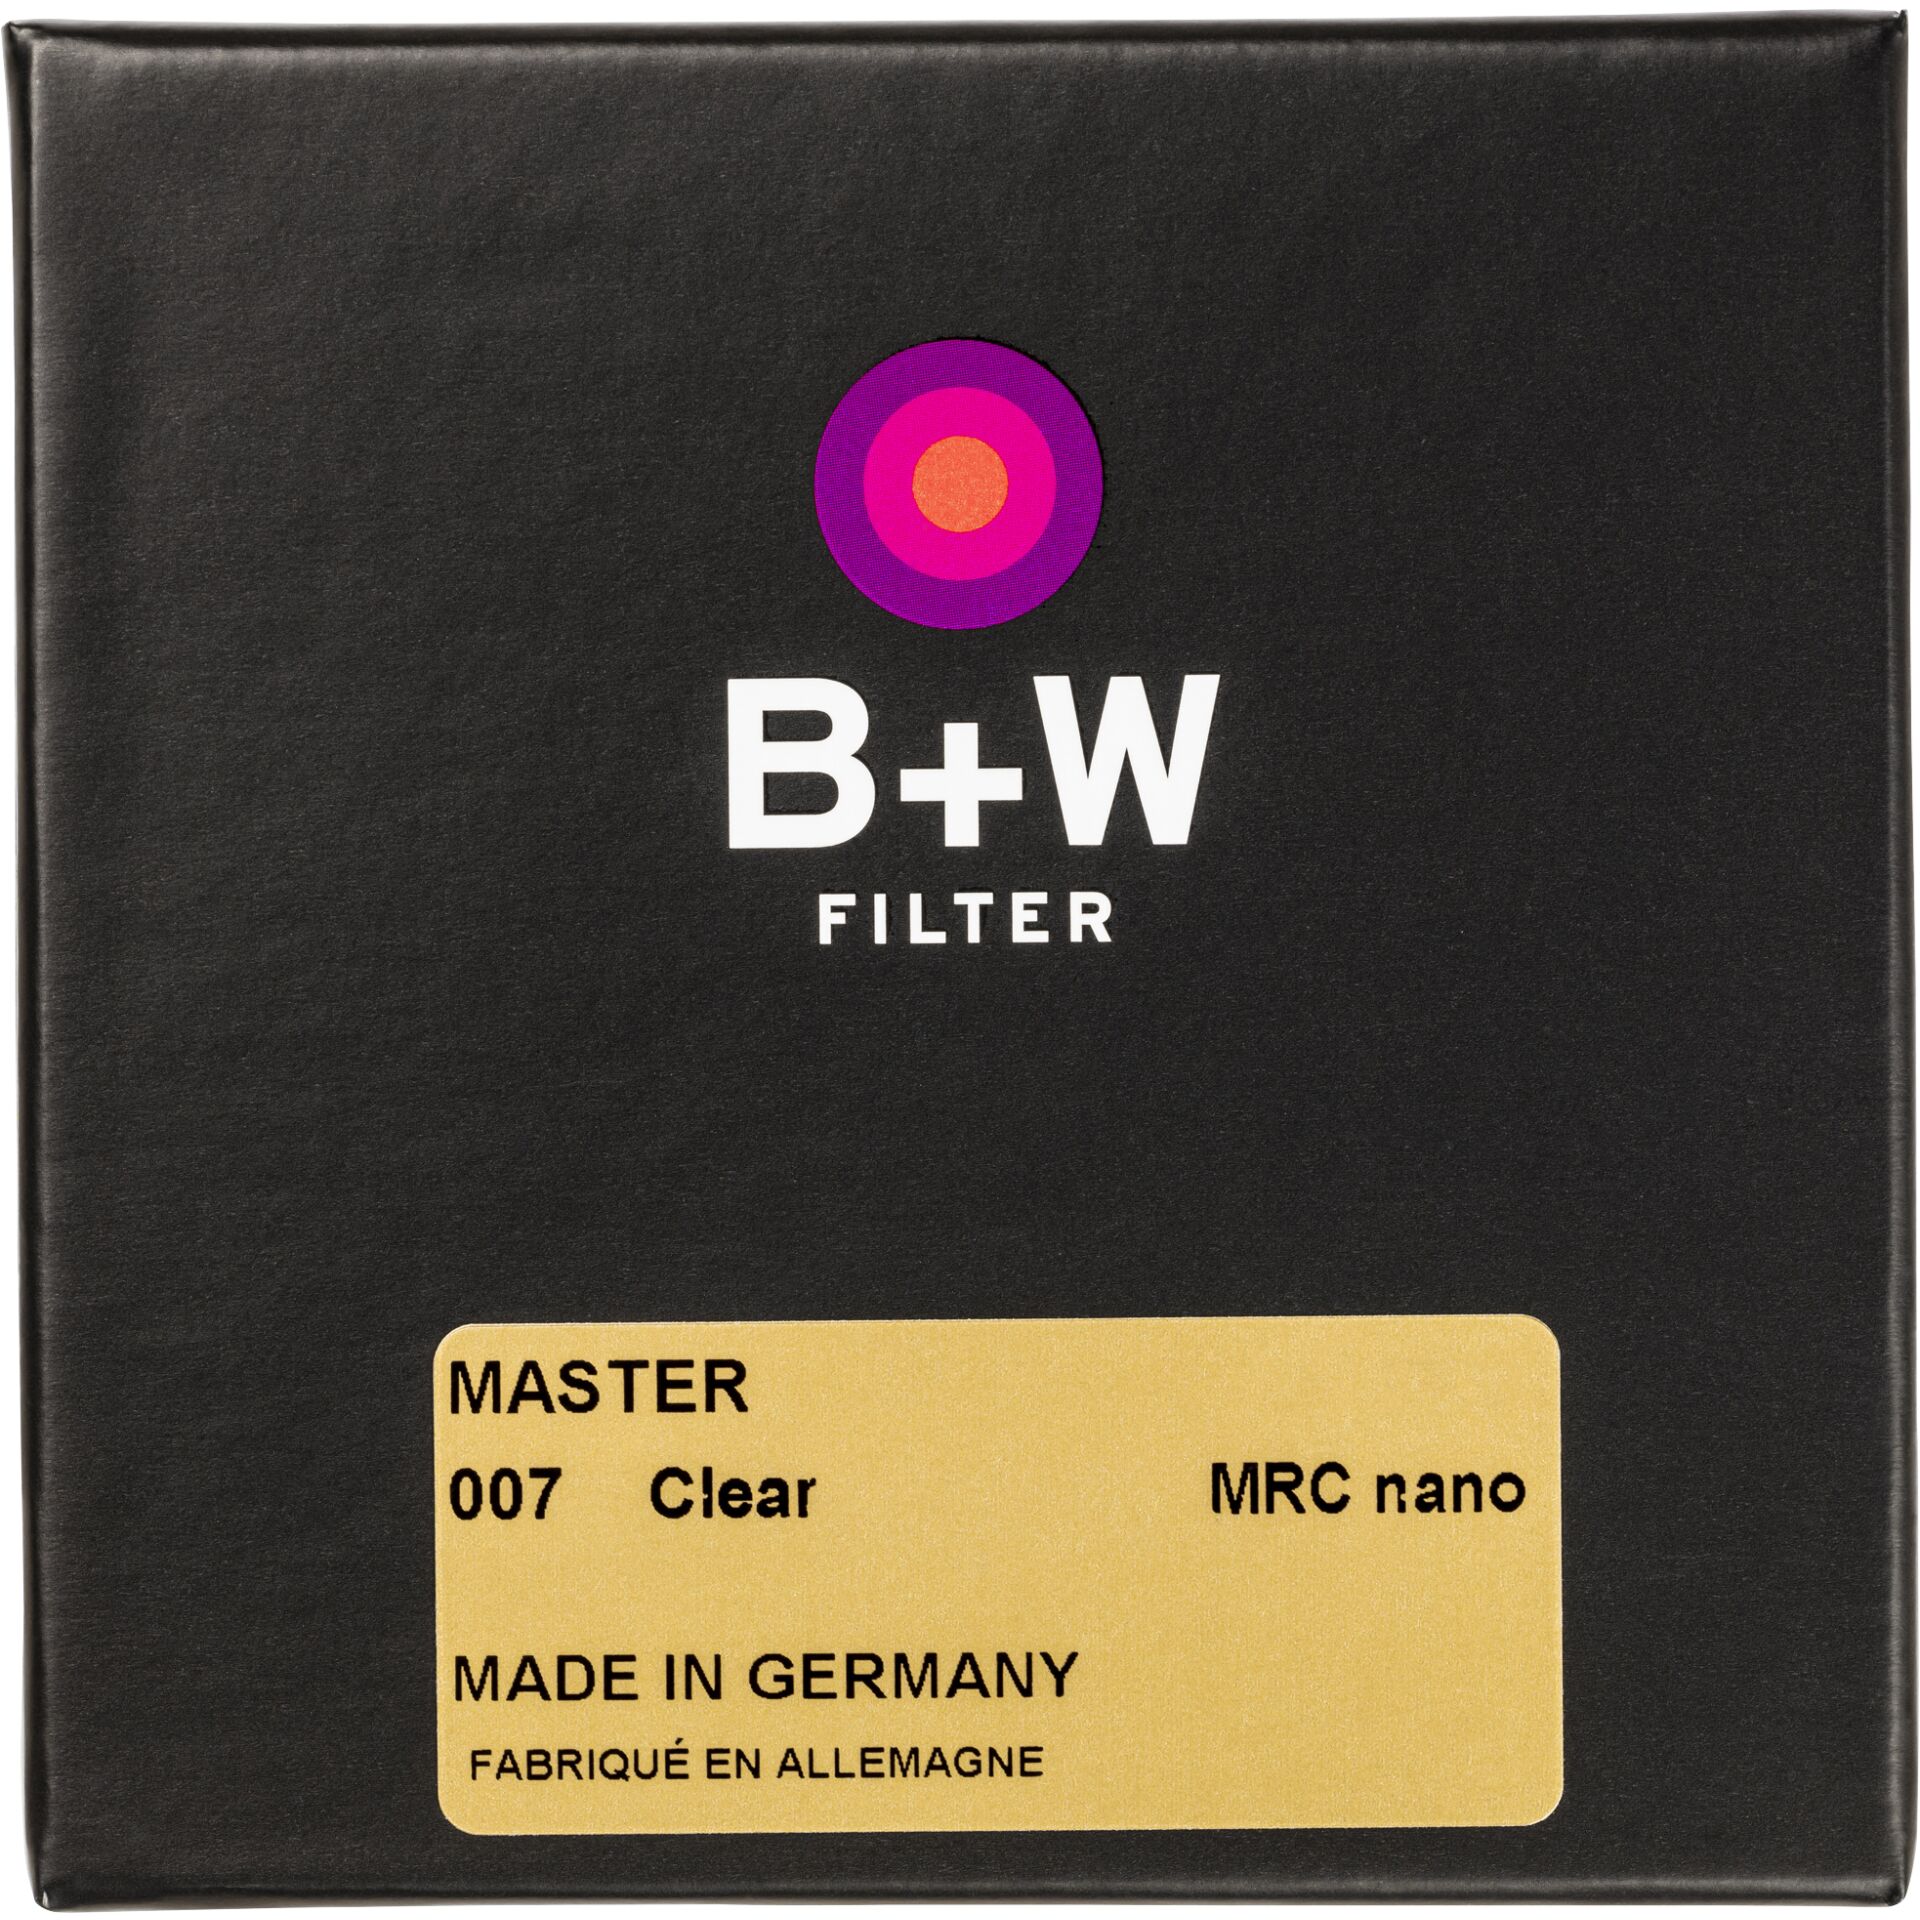 B+W CLEAR FILTER MRC nano MASTER 60mm